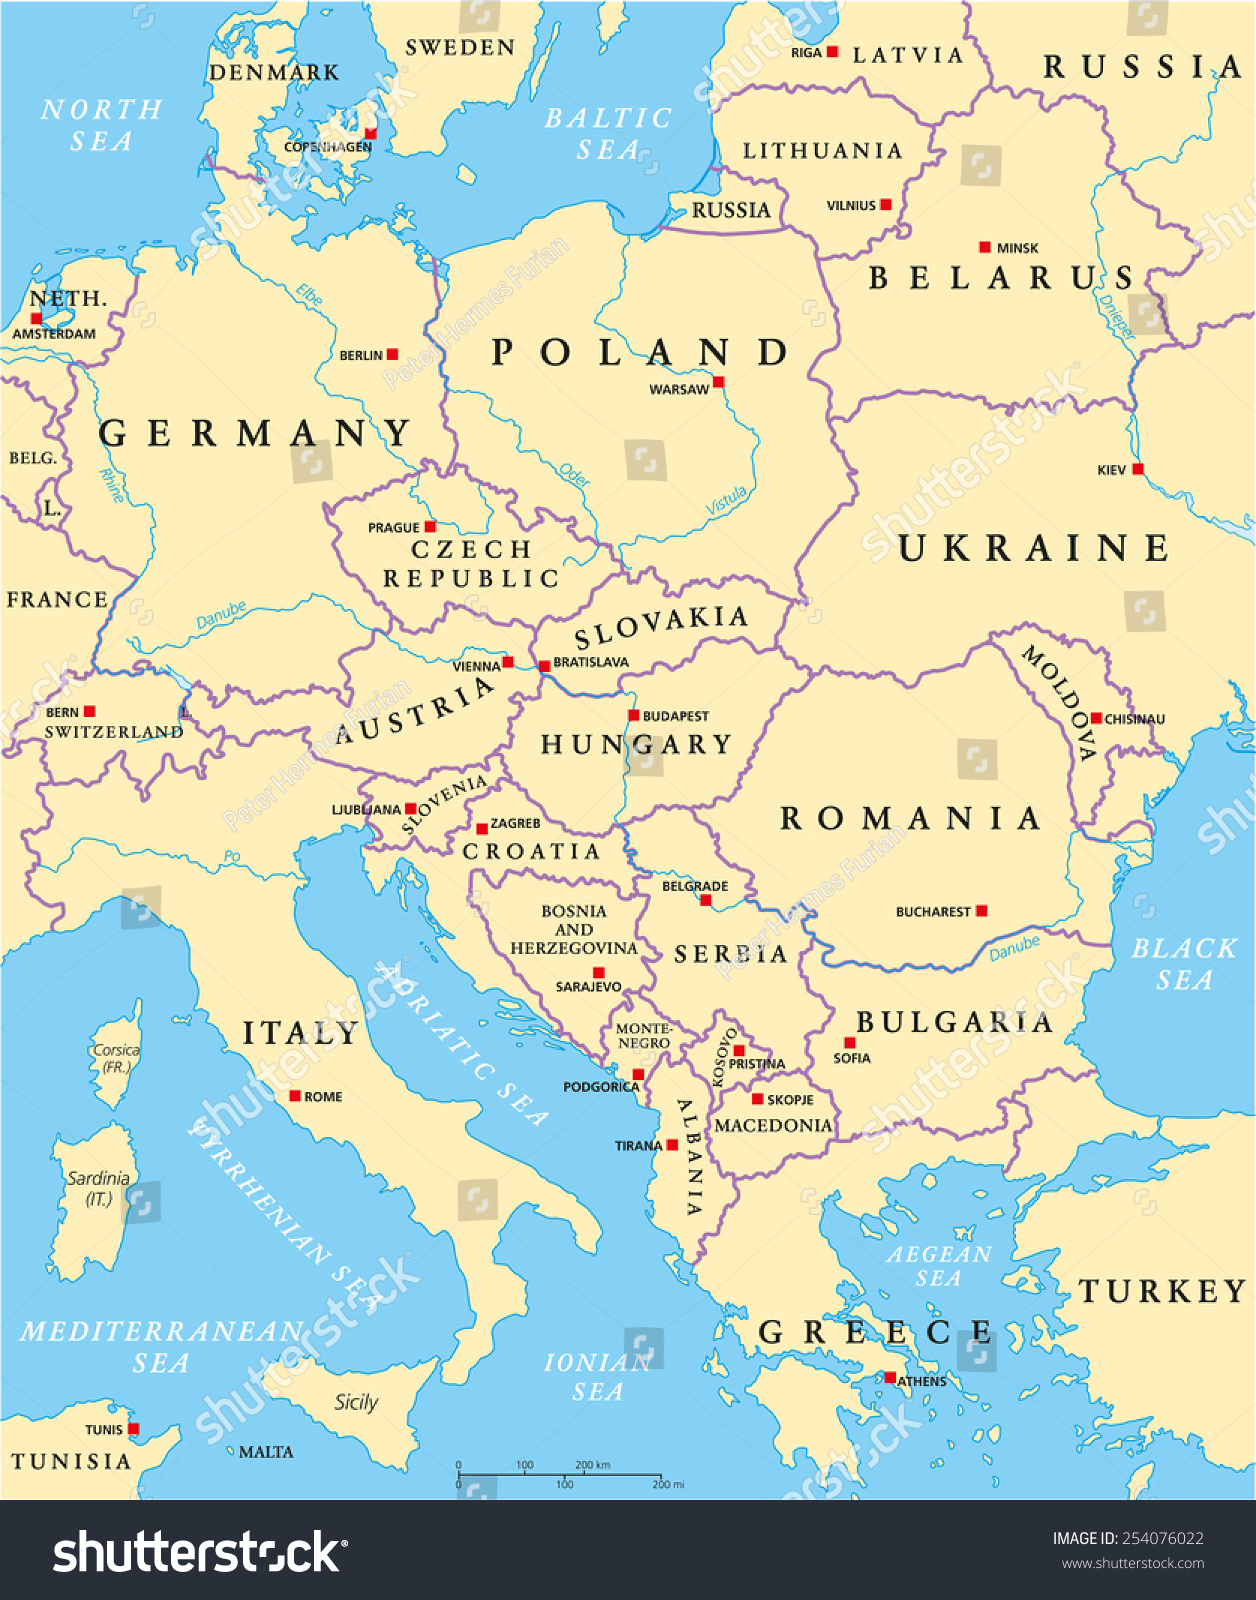 Image Vectorielle De Stock De Carte Politique De L'europe destiné Carte D Europe Avec Les Capitales